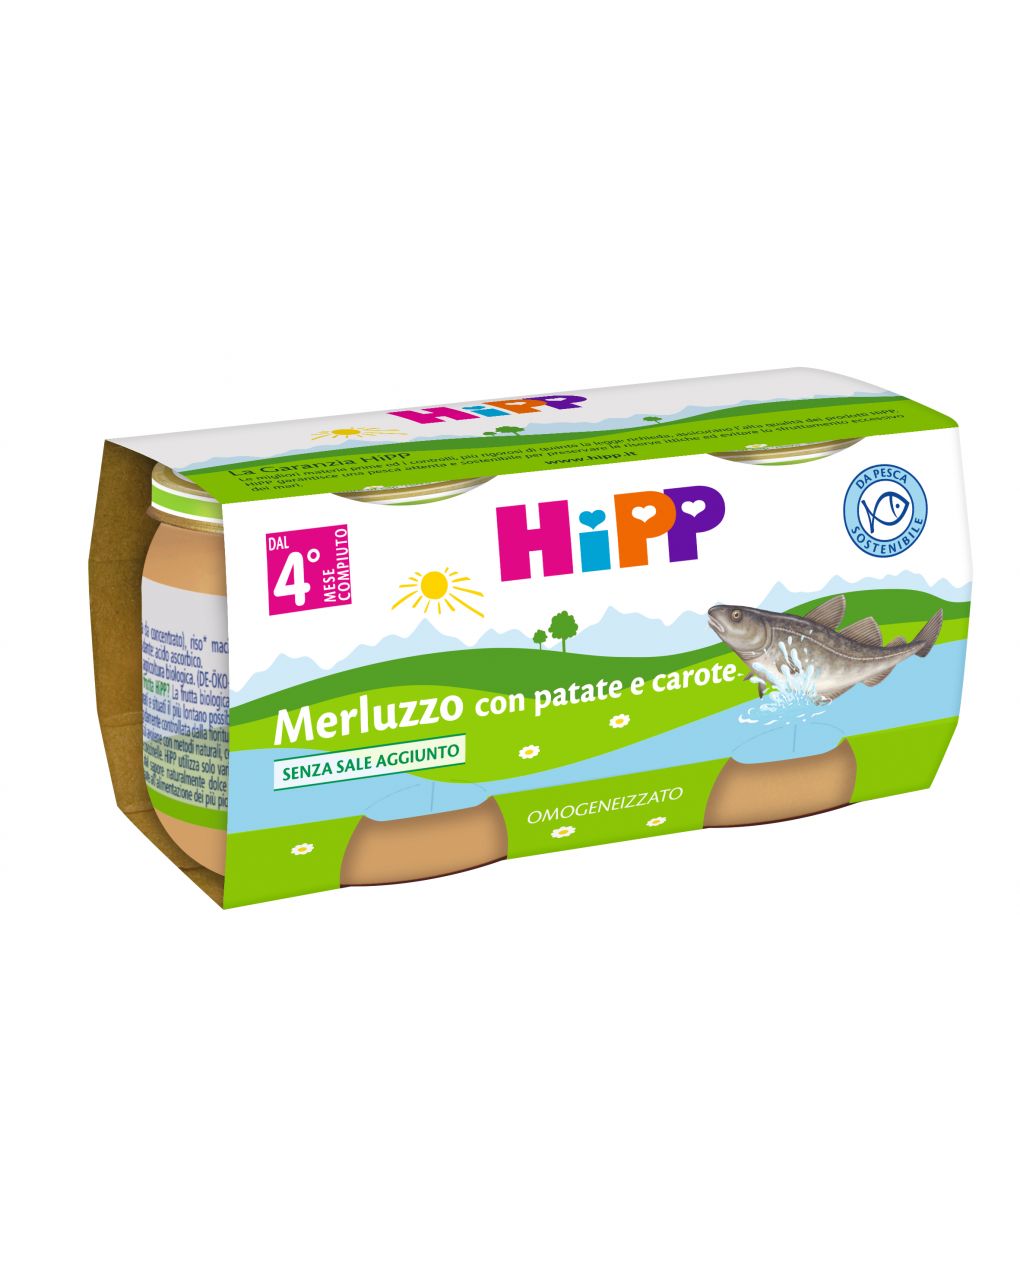 Hipp - omogeneizzato merluzzo con patate e carote 2x80g - Hipp